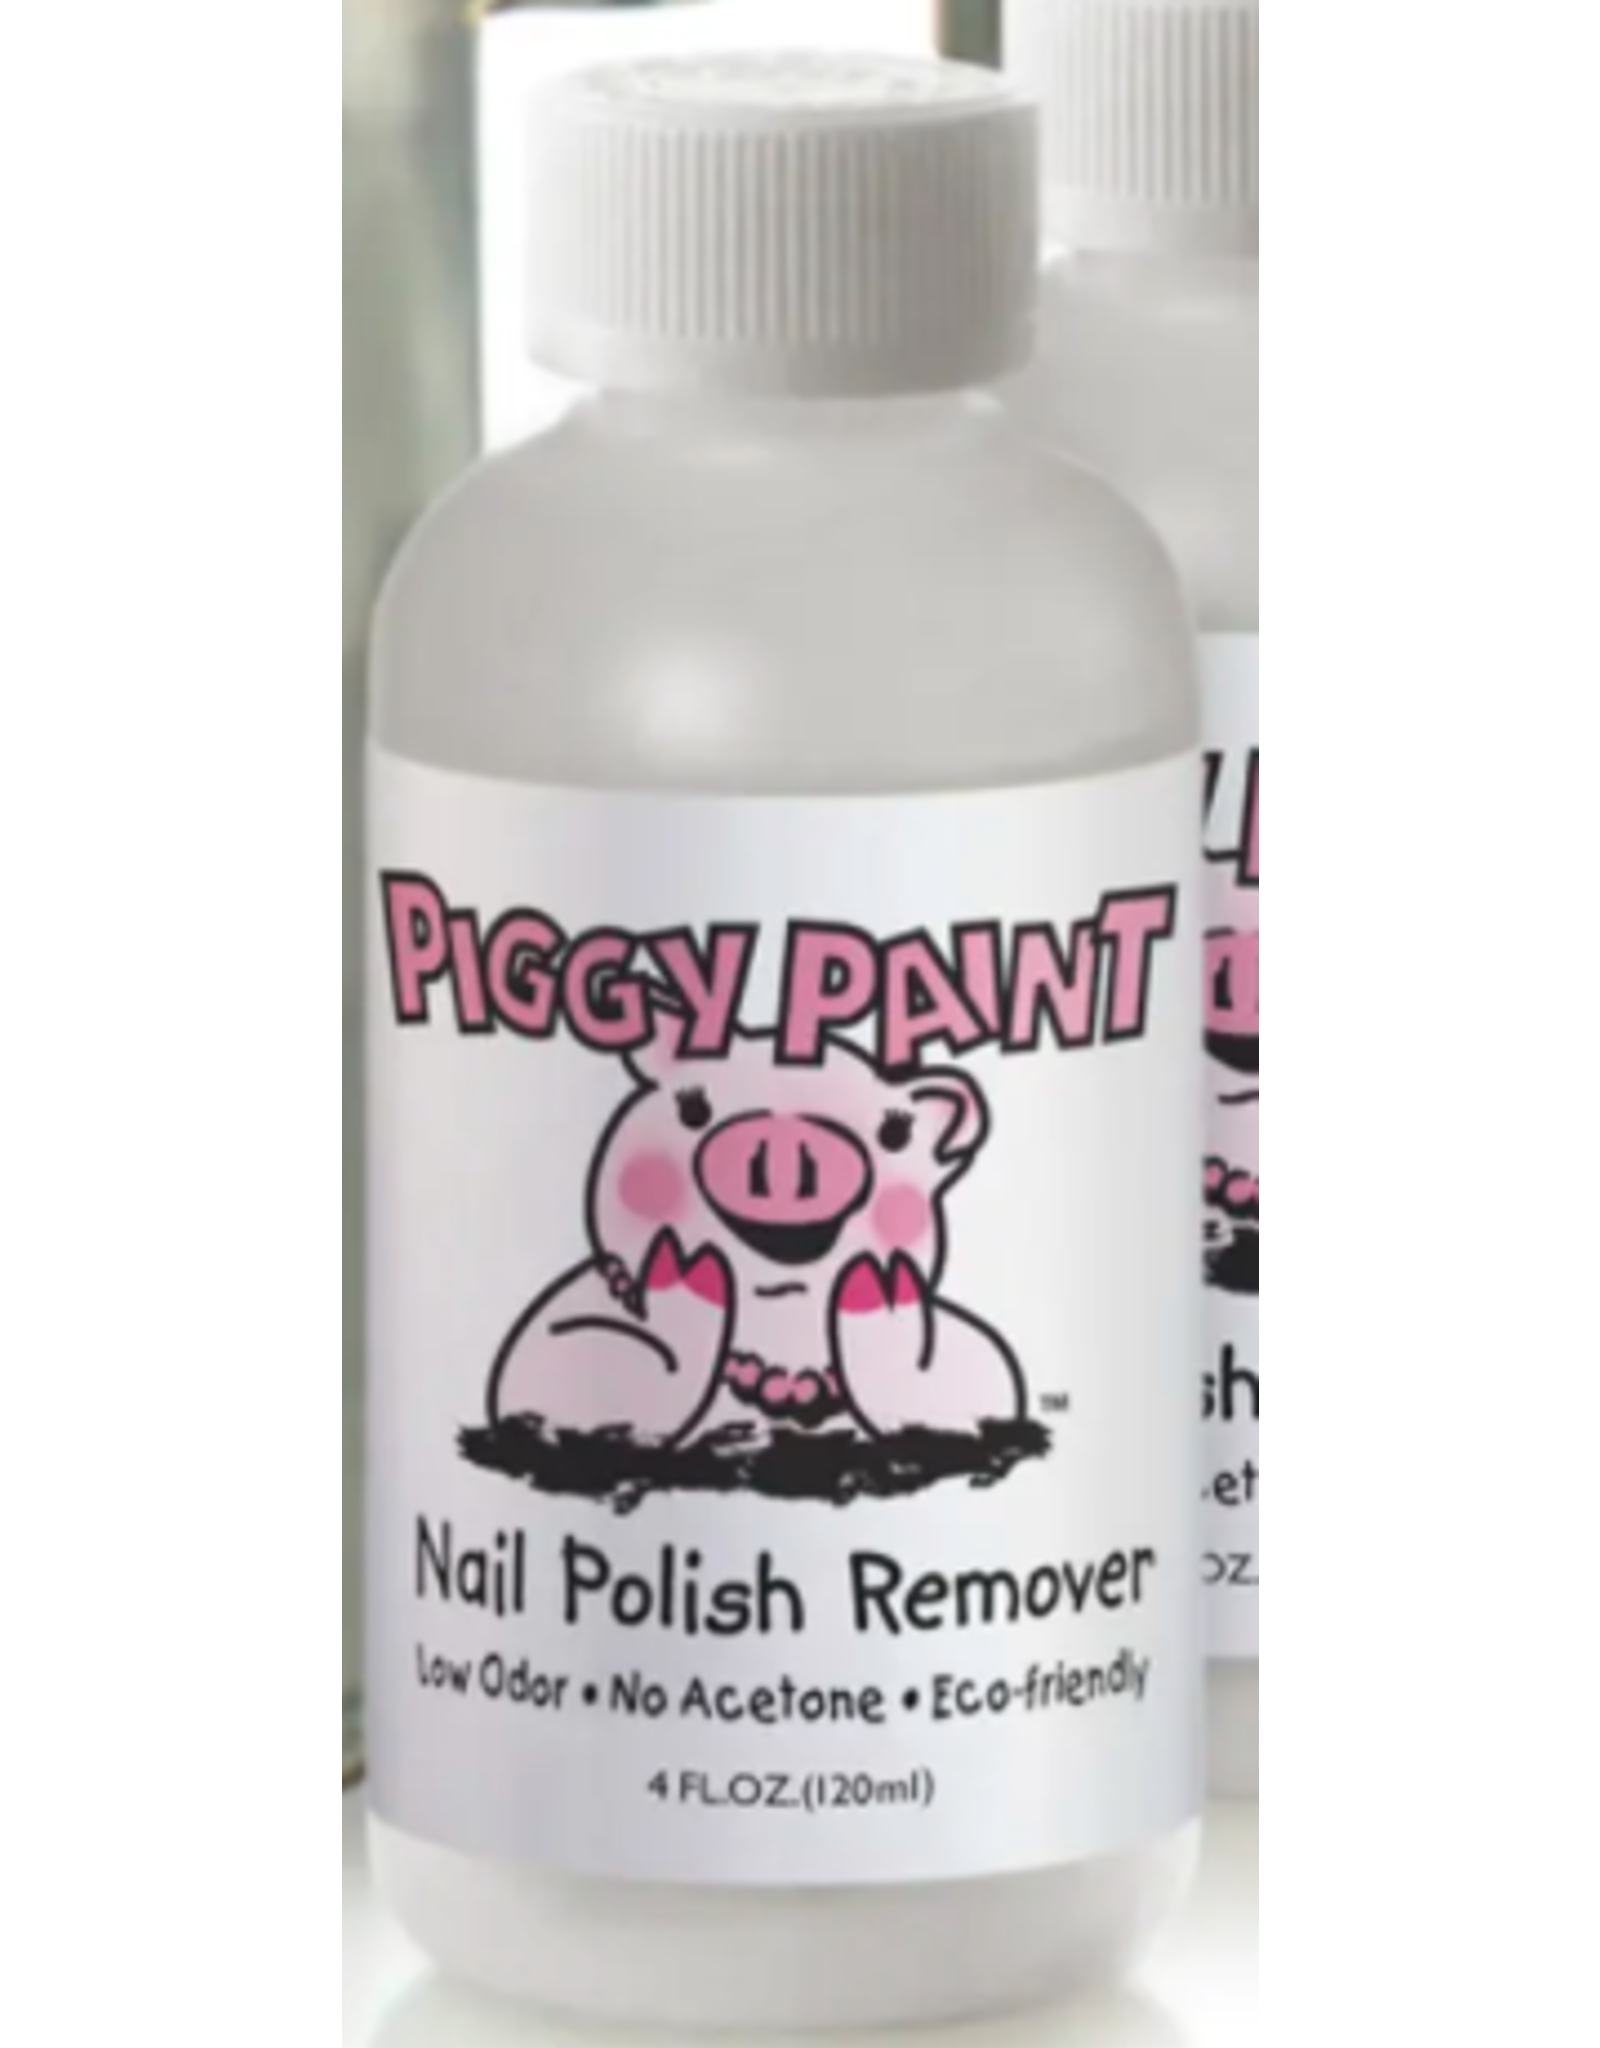 Nail Polish Remover